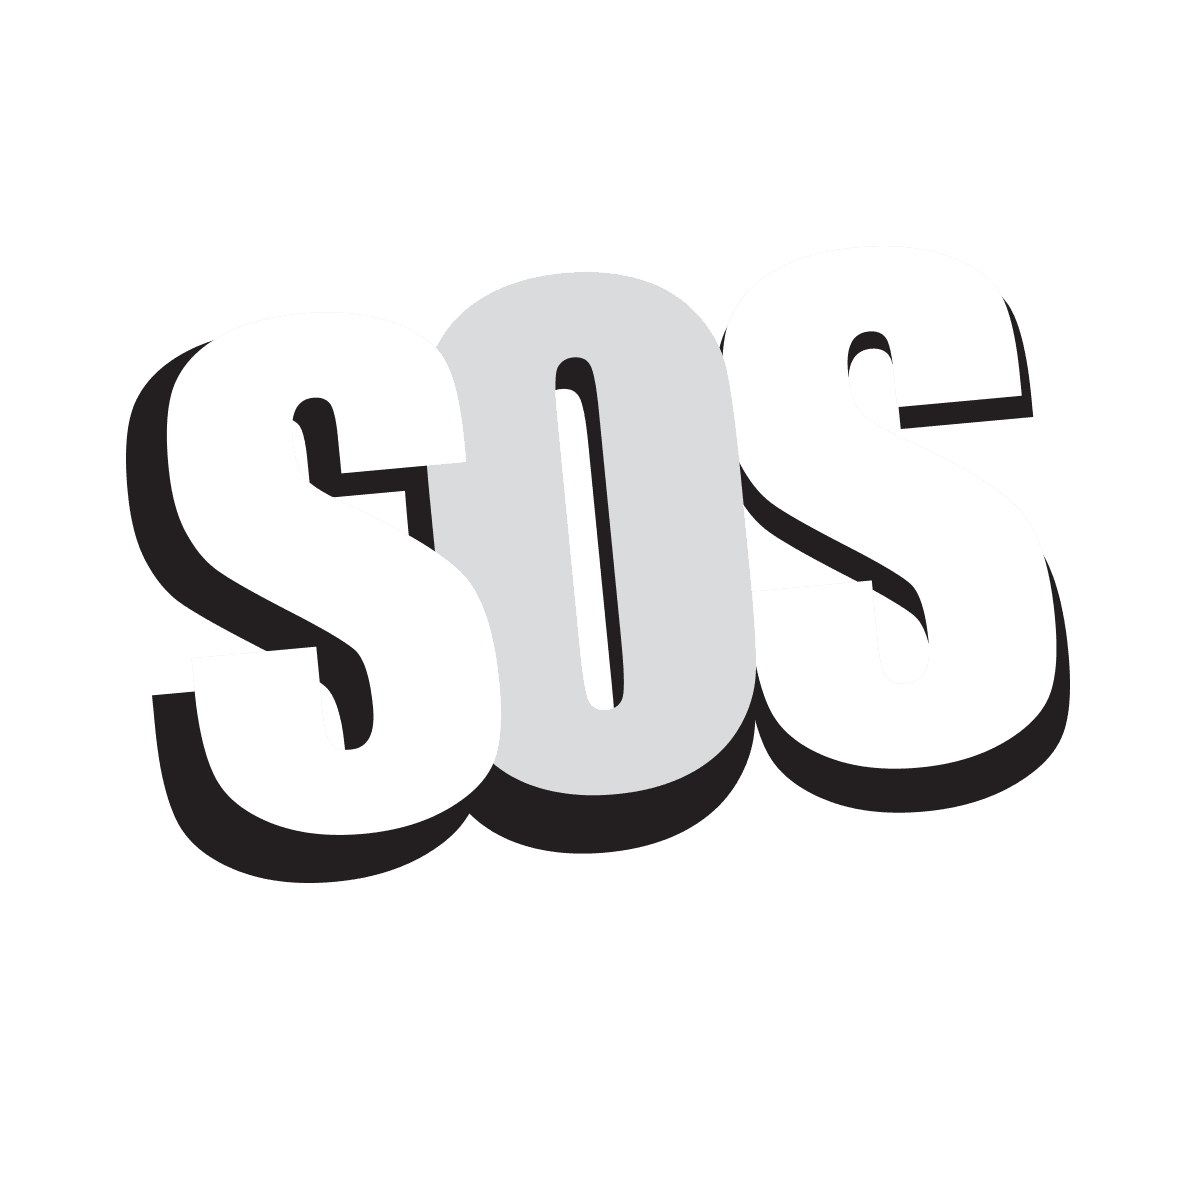 Logo de SOS